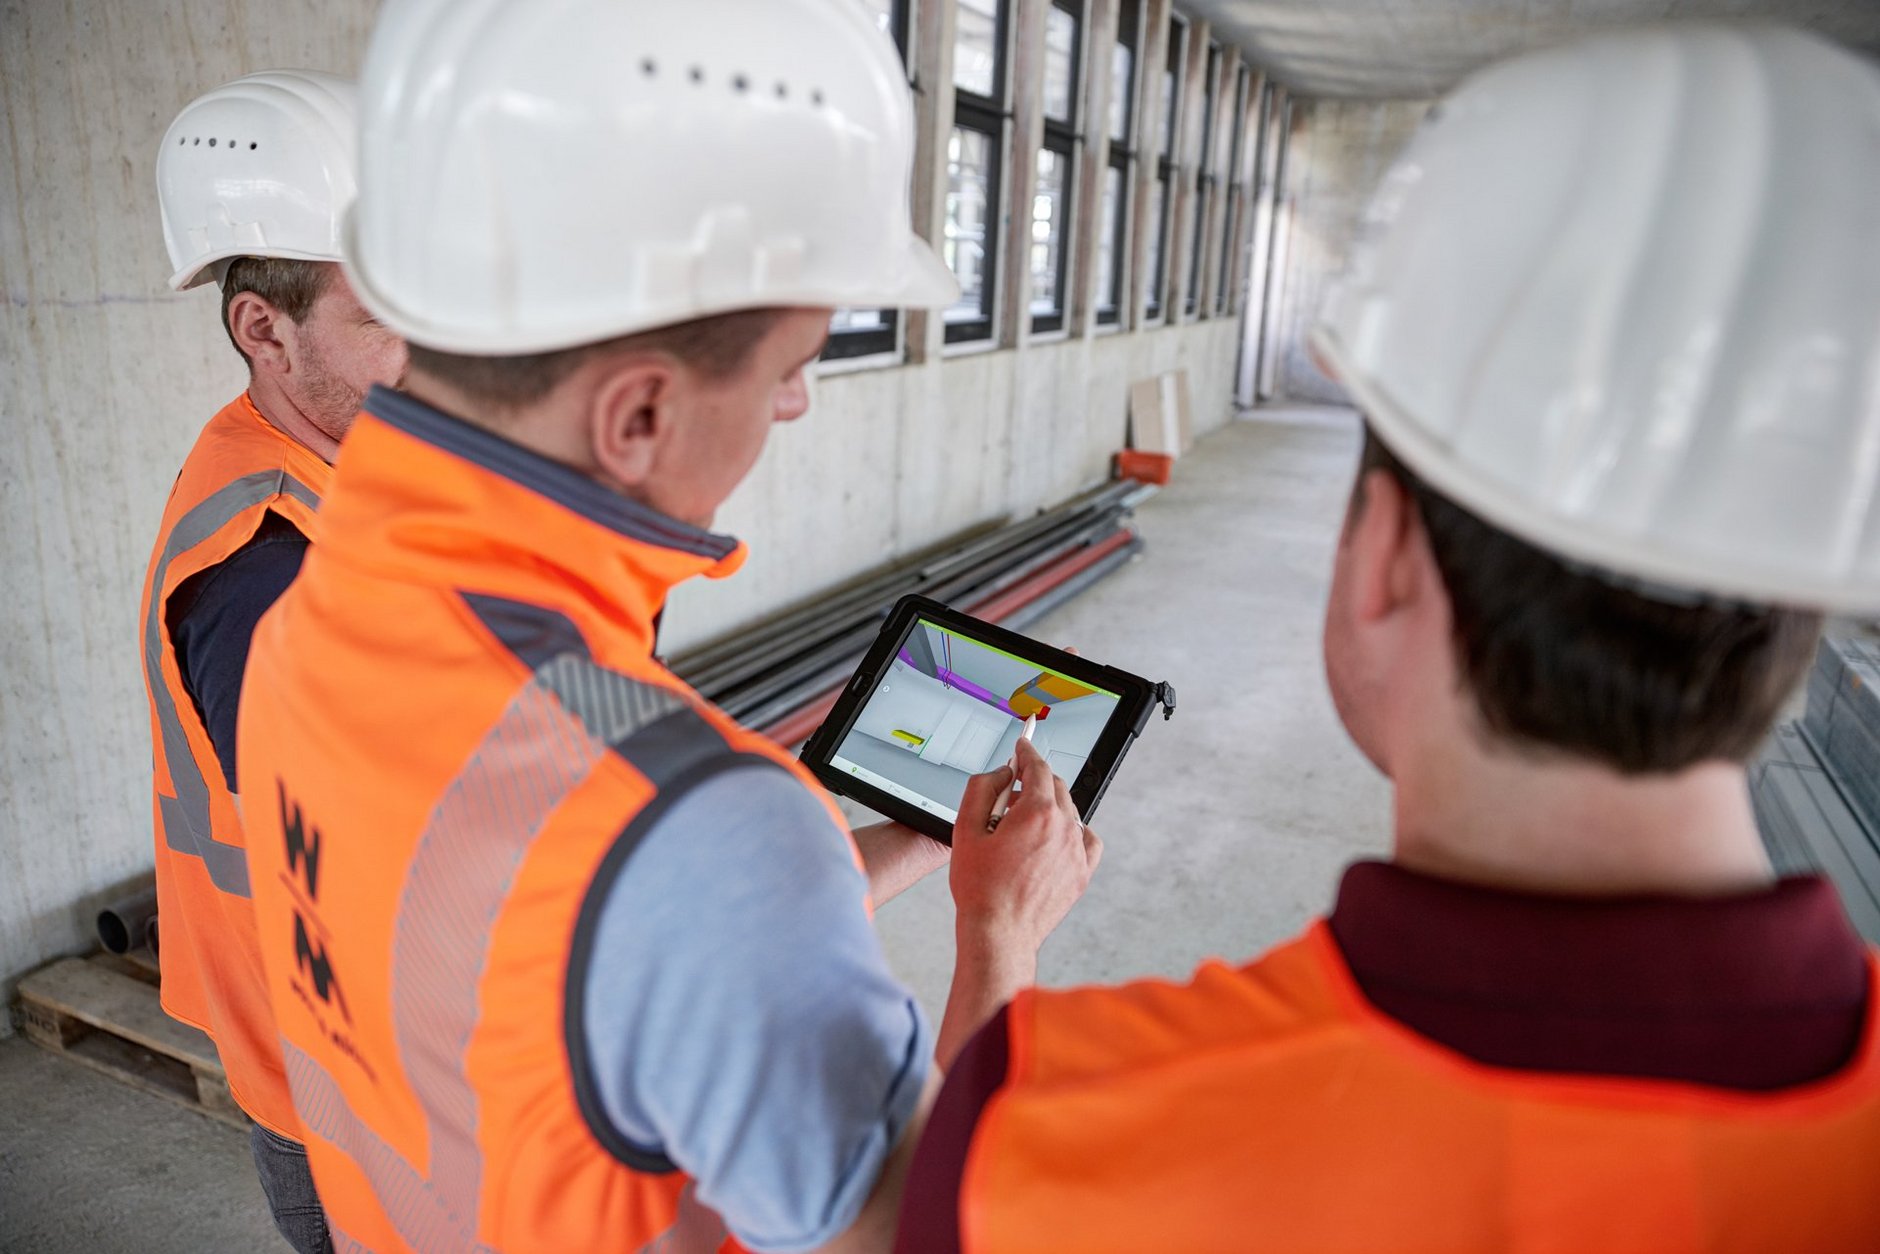 Bauarbeiter besprechen sich mit Tablet